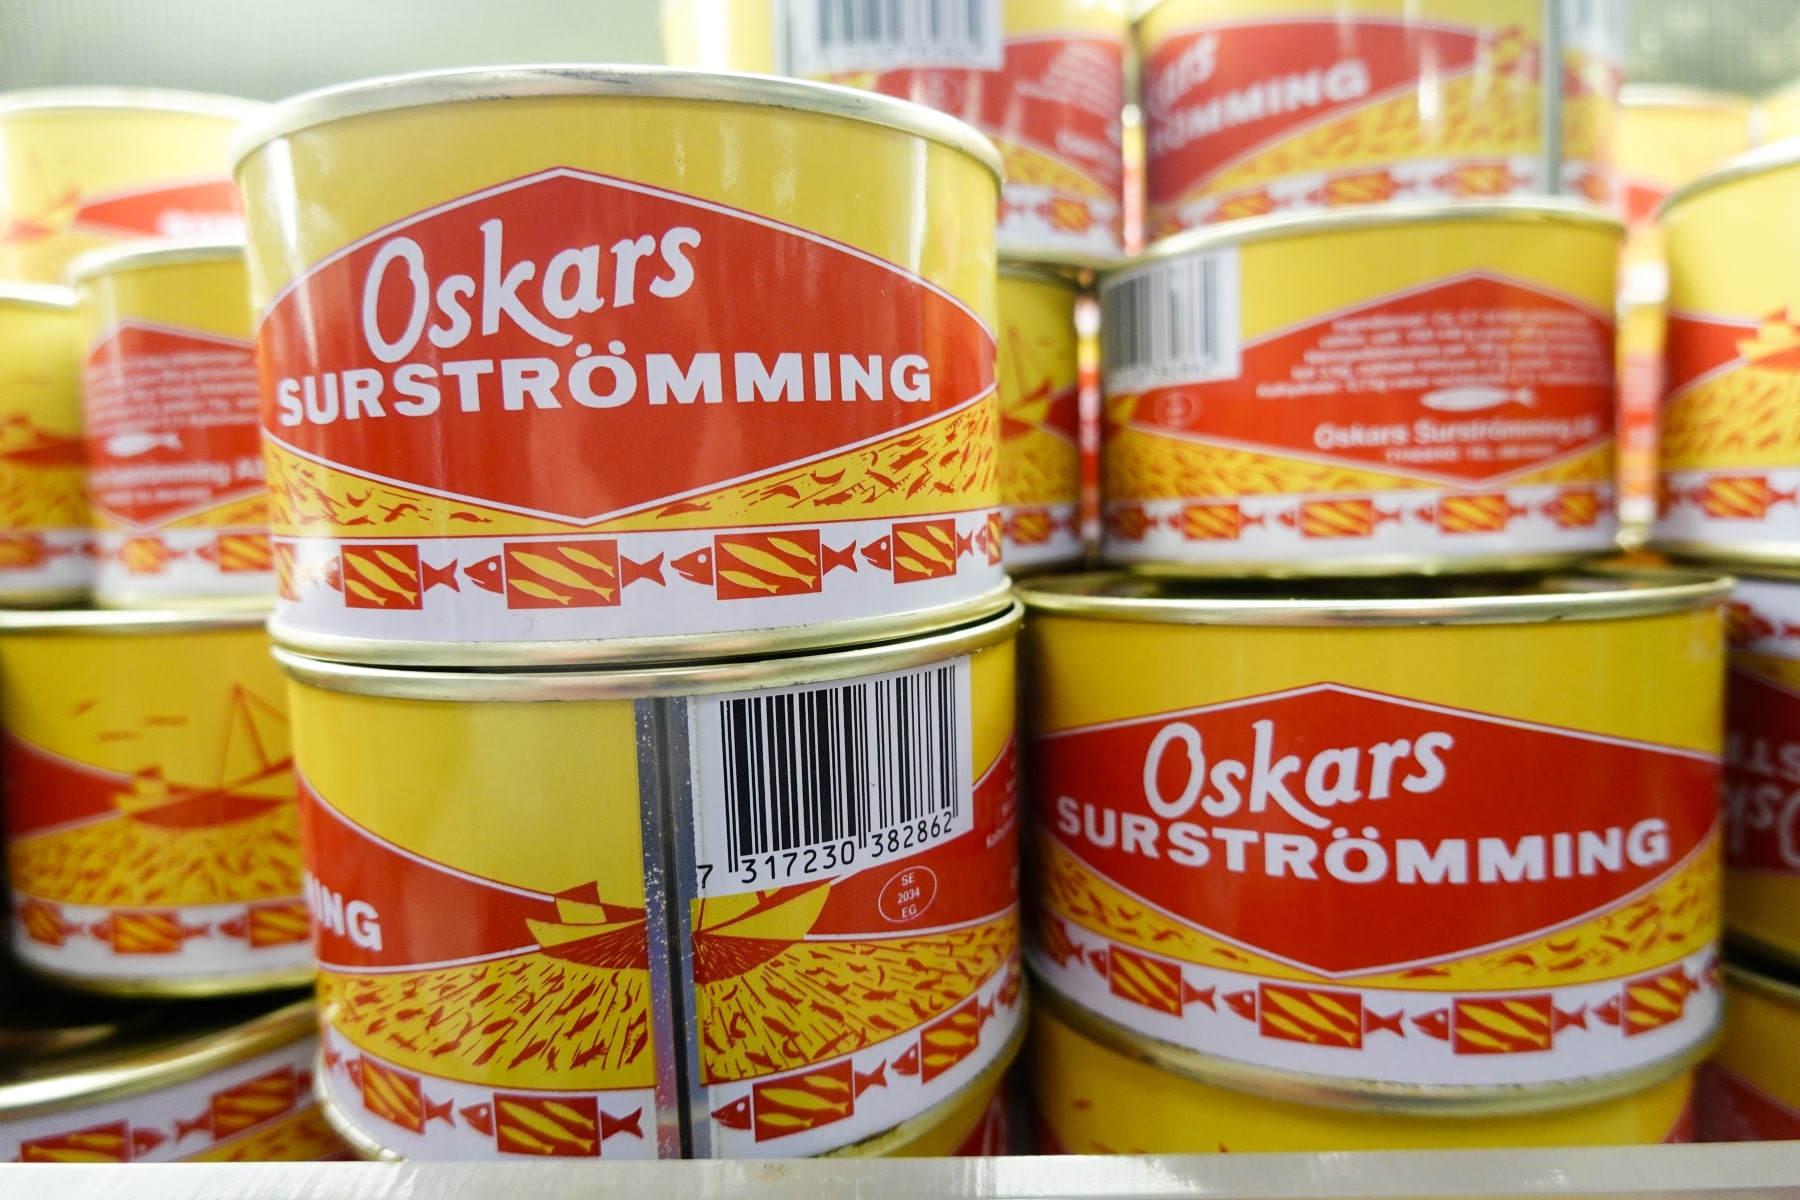 Buy Oskars Surstromming Online From Sweden - Made in Scandinavian